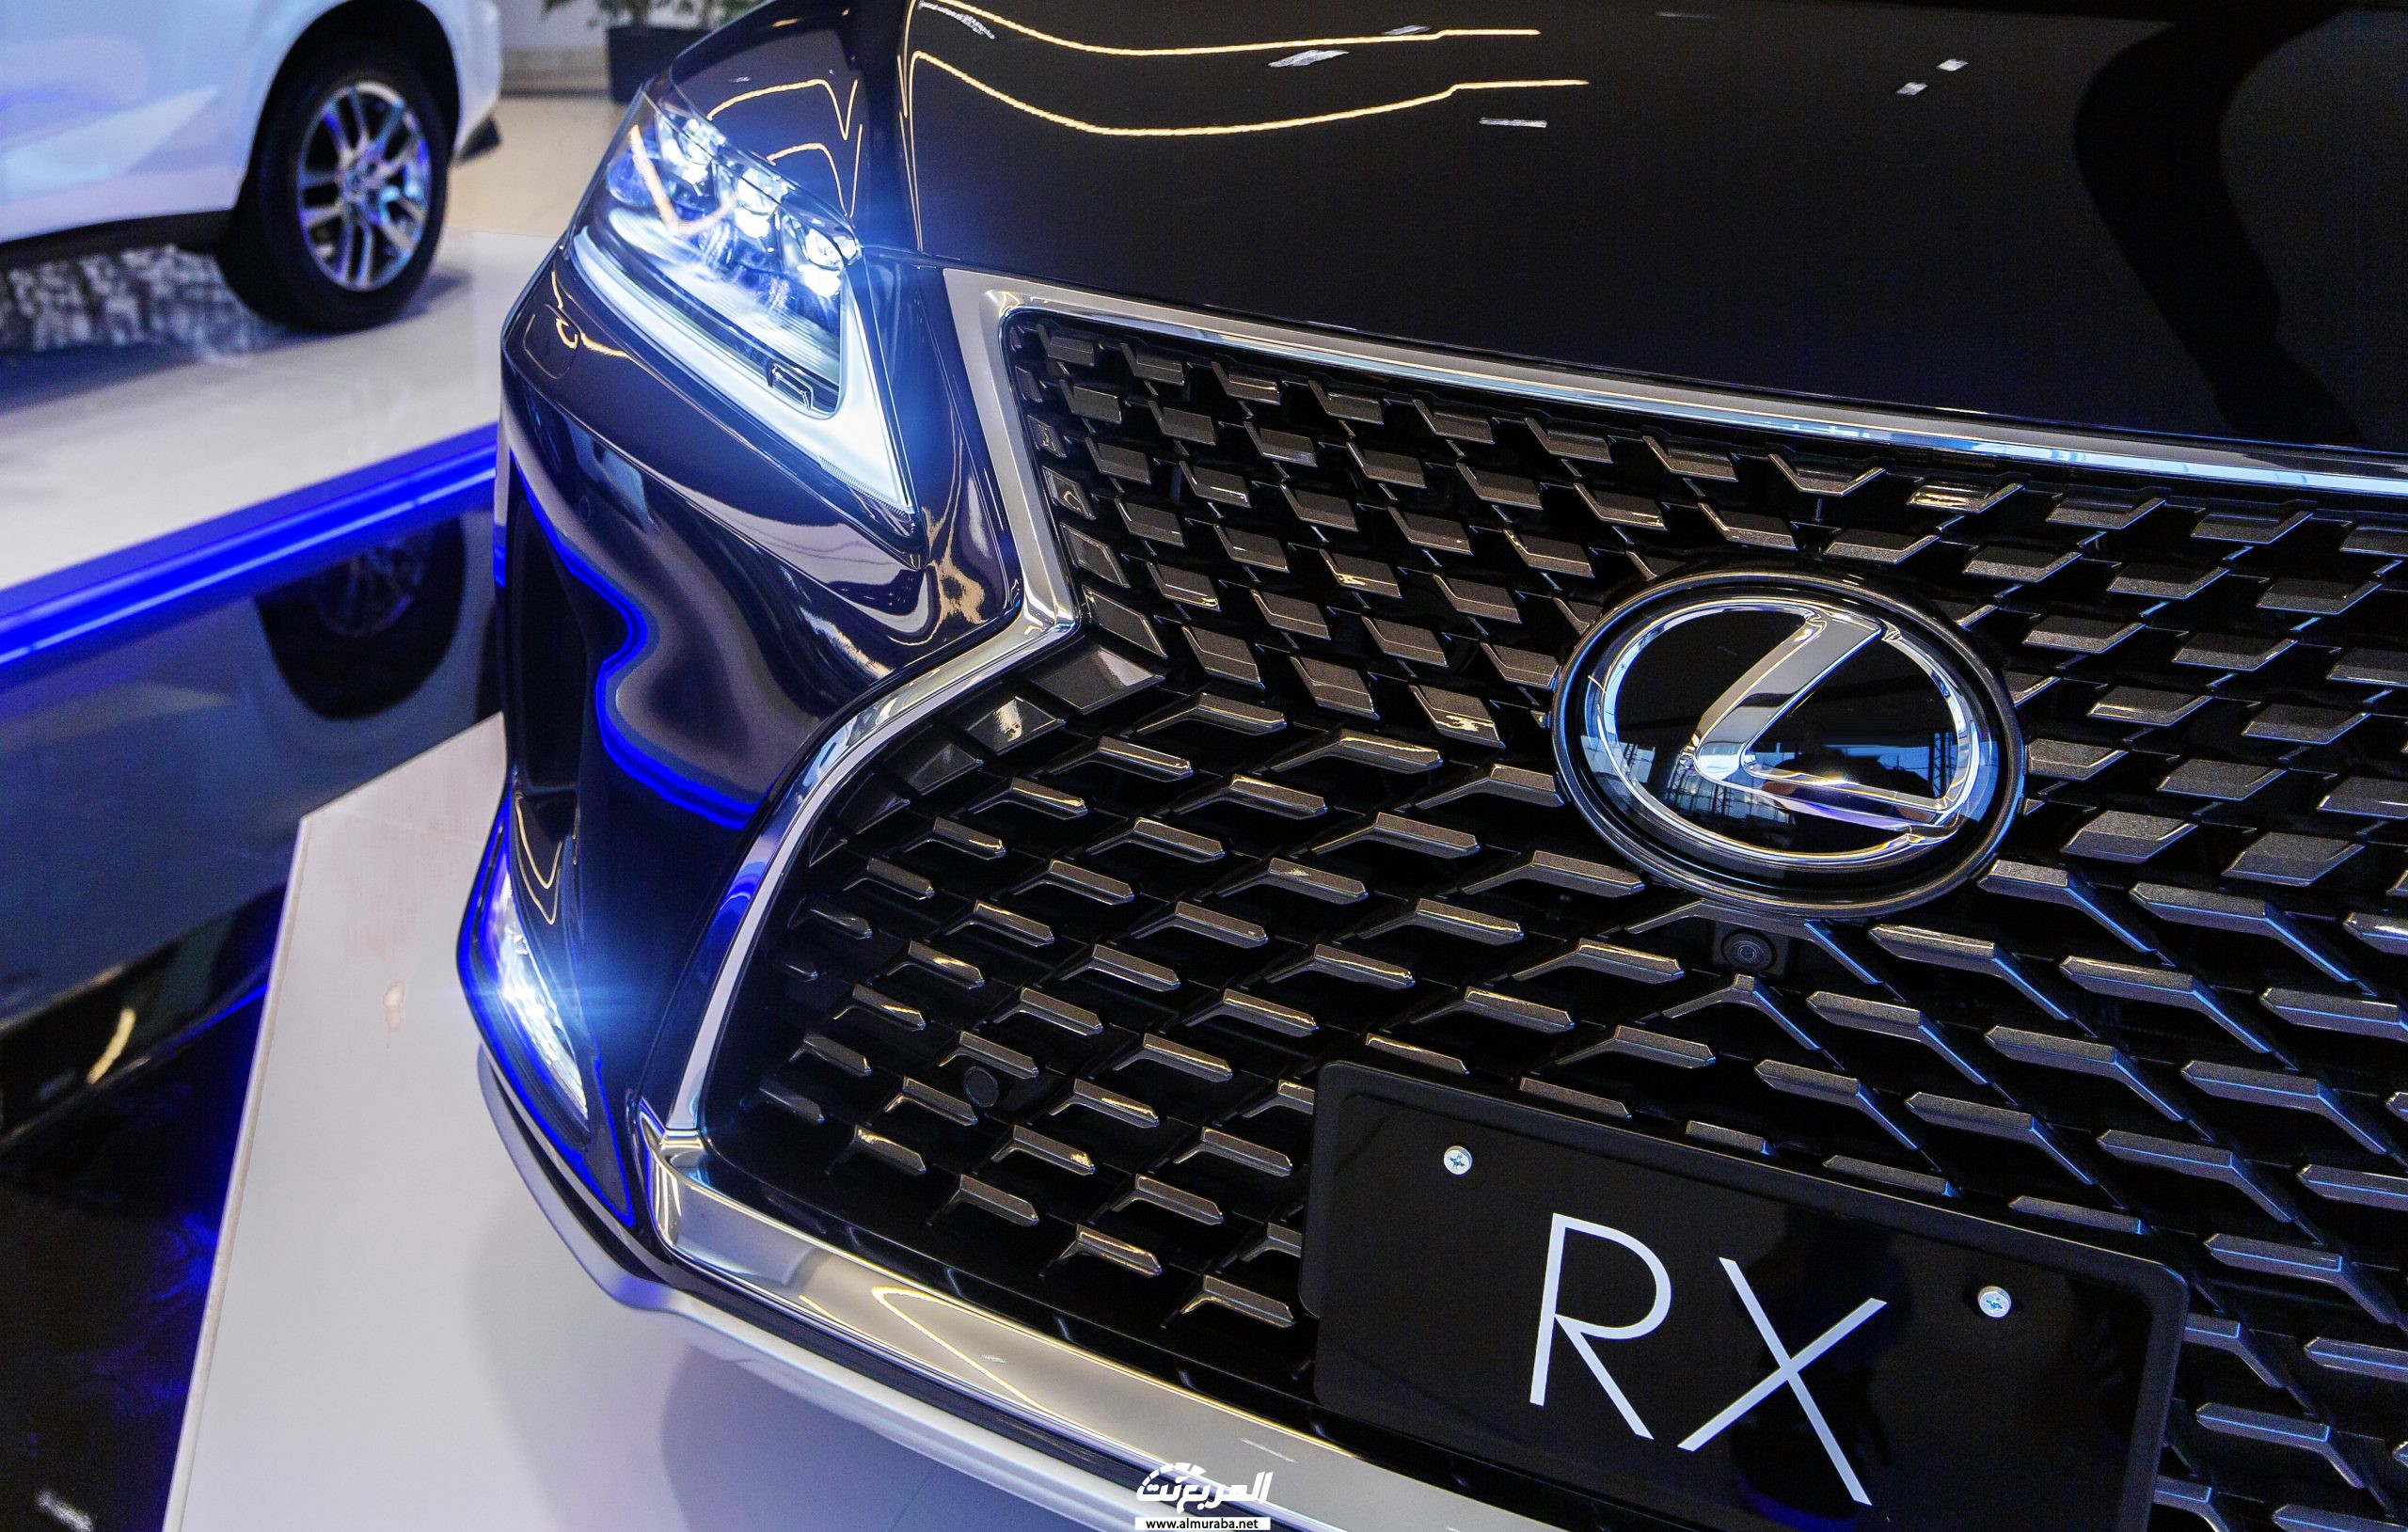 صور لكزس ار اكس 2020 في جلسة تصوير خاصة Lexus RX 11